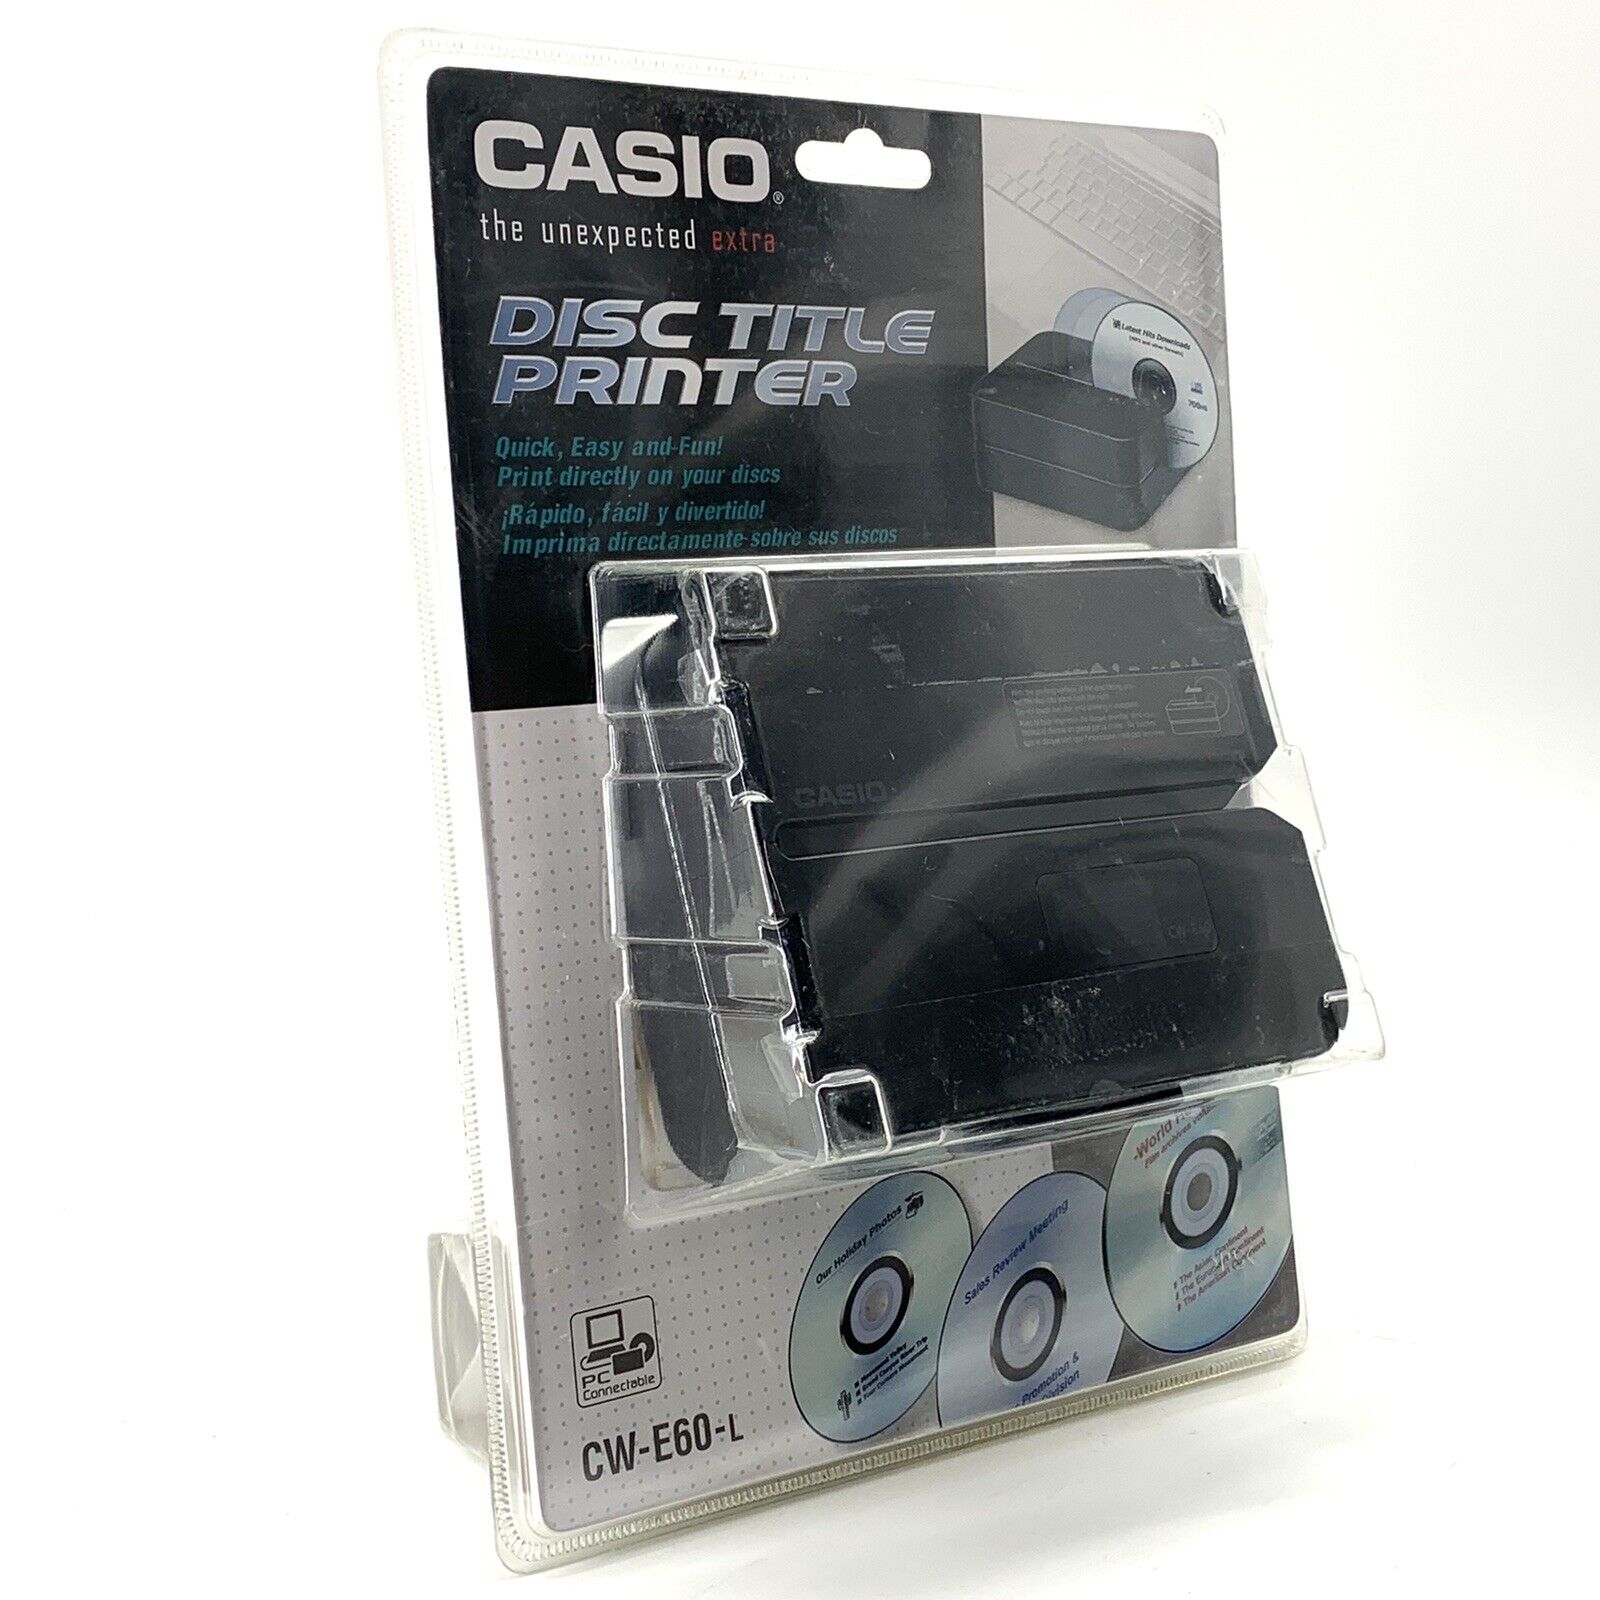 Casio CW-E60-L CD DVD Disc Title Thermal Printer